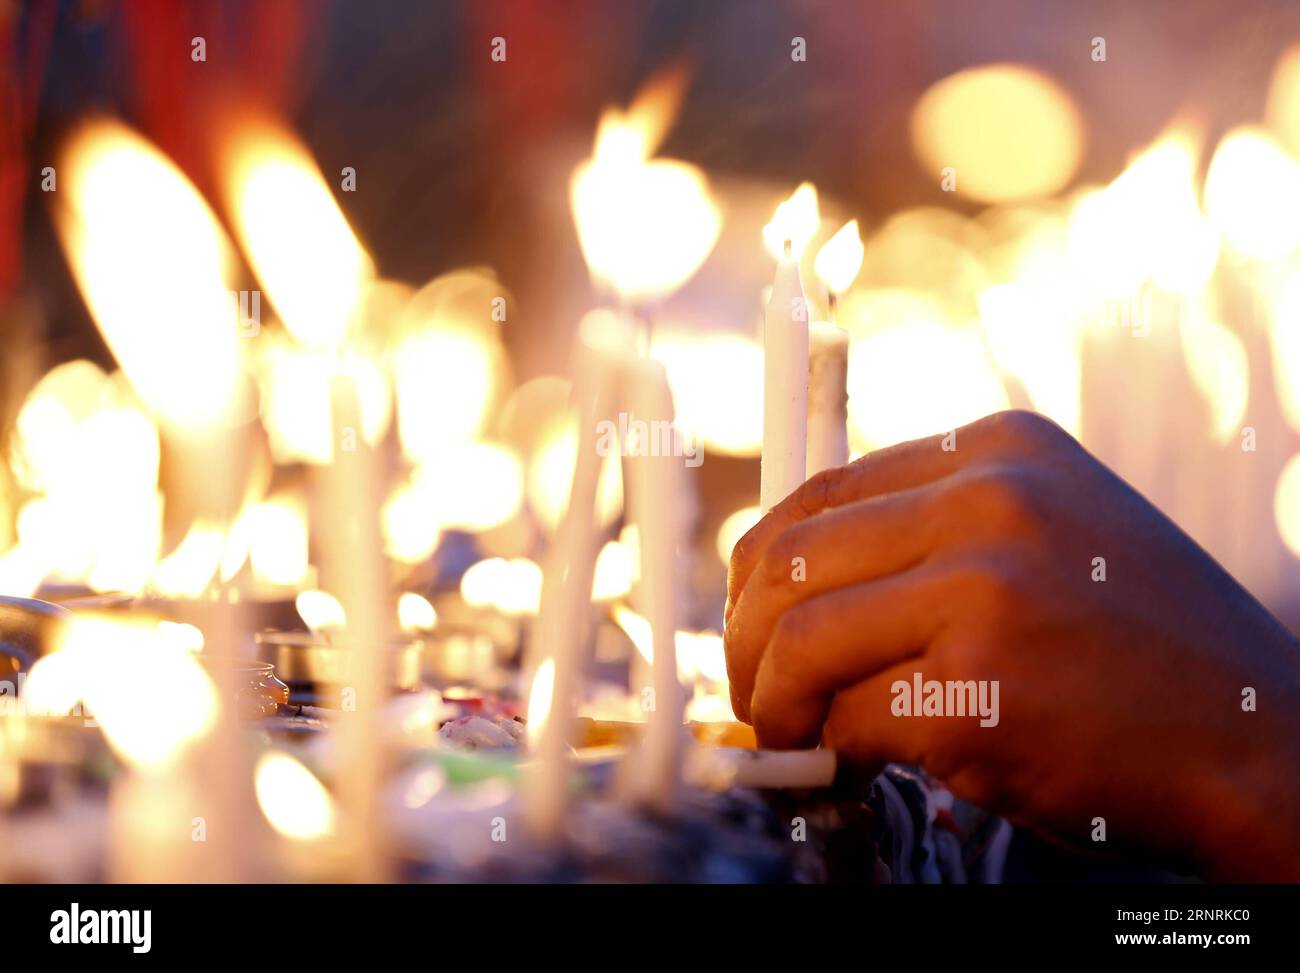 (171005) -- , 5. Oktober 2017 -- Ein Mann zündet Kerzen in der Shwedagon-Pagode während des Thadingyut-Festivals in Myanmar am 5. Oktober 2017 an. Das Thadingyut Festival, das Lighting Festival of Myanmar, findet am Vollmondtag des burmesischen Mondmonats Thadingyut statt. U Aung) (dtf) MYANMAR--thadingyut FESTIVAL yangon PUBLICATIONxNOTxINxCHN Stockfoto